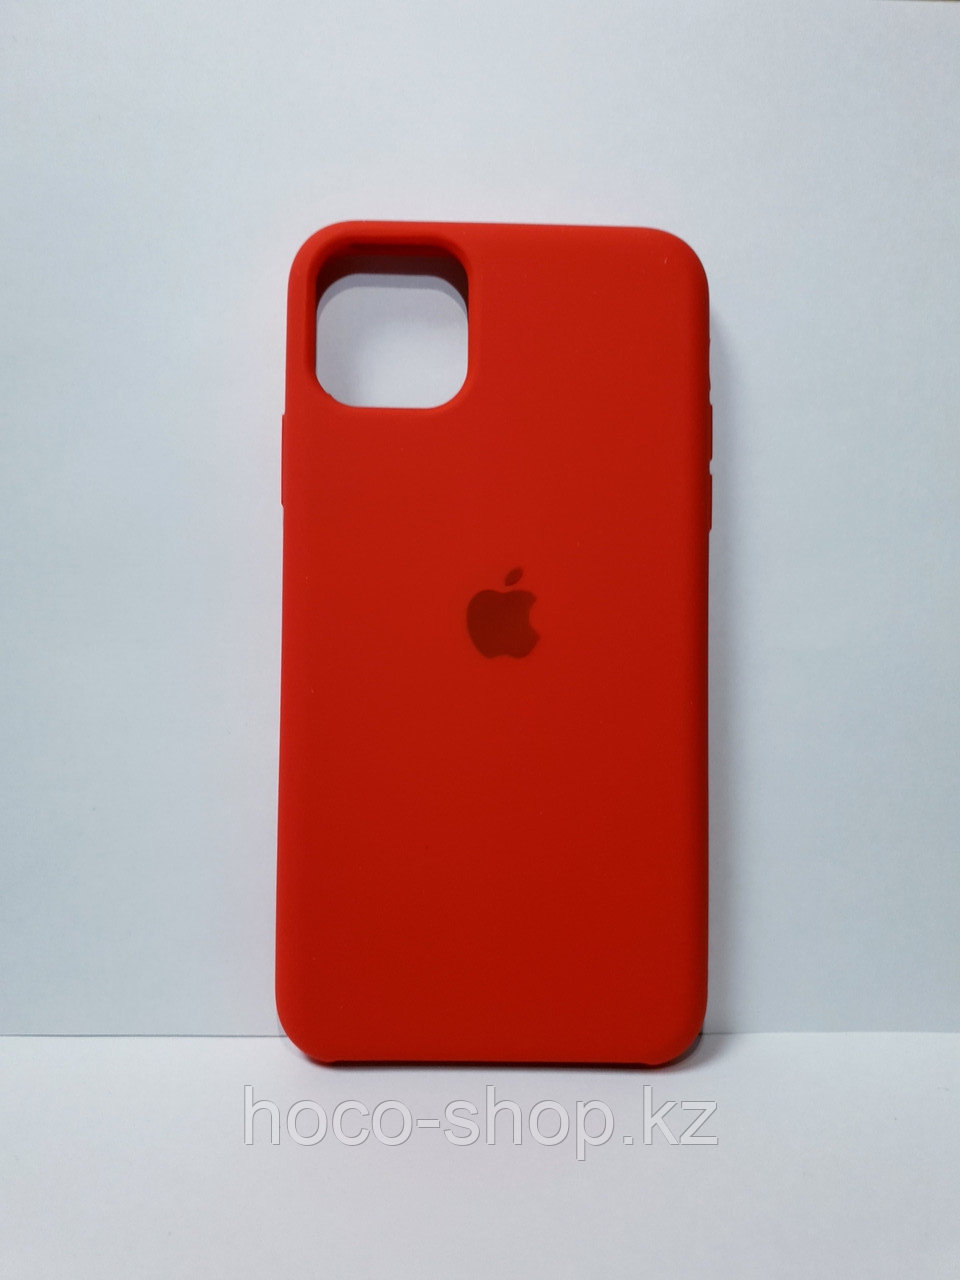 Защитный чехол для iPhone 11 Pro Max Soft Touch силиконовый, красный